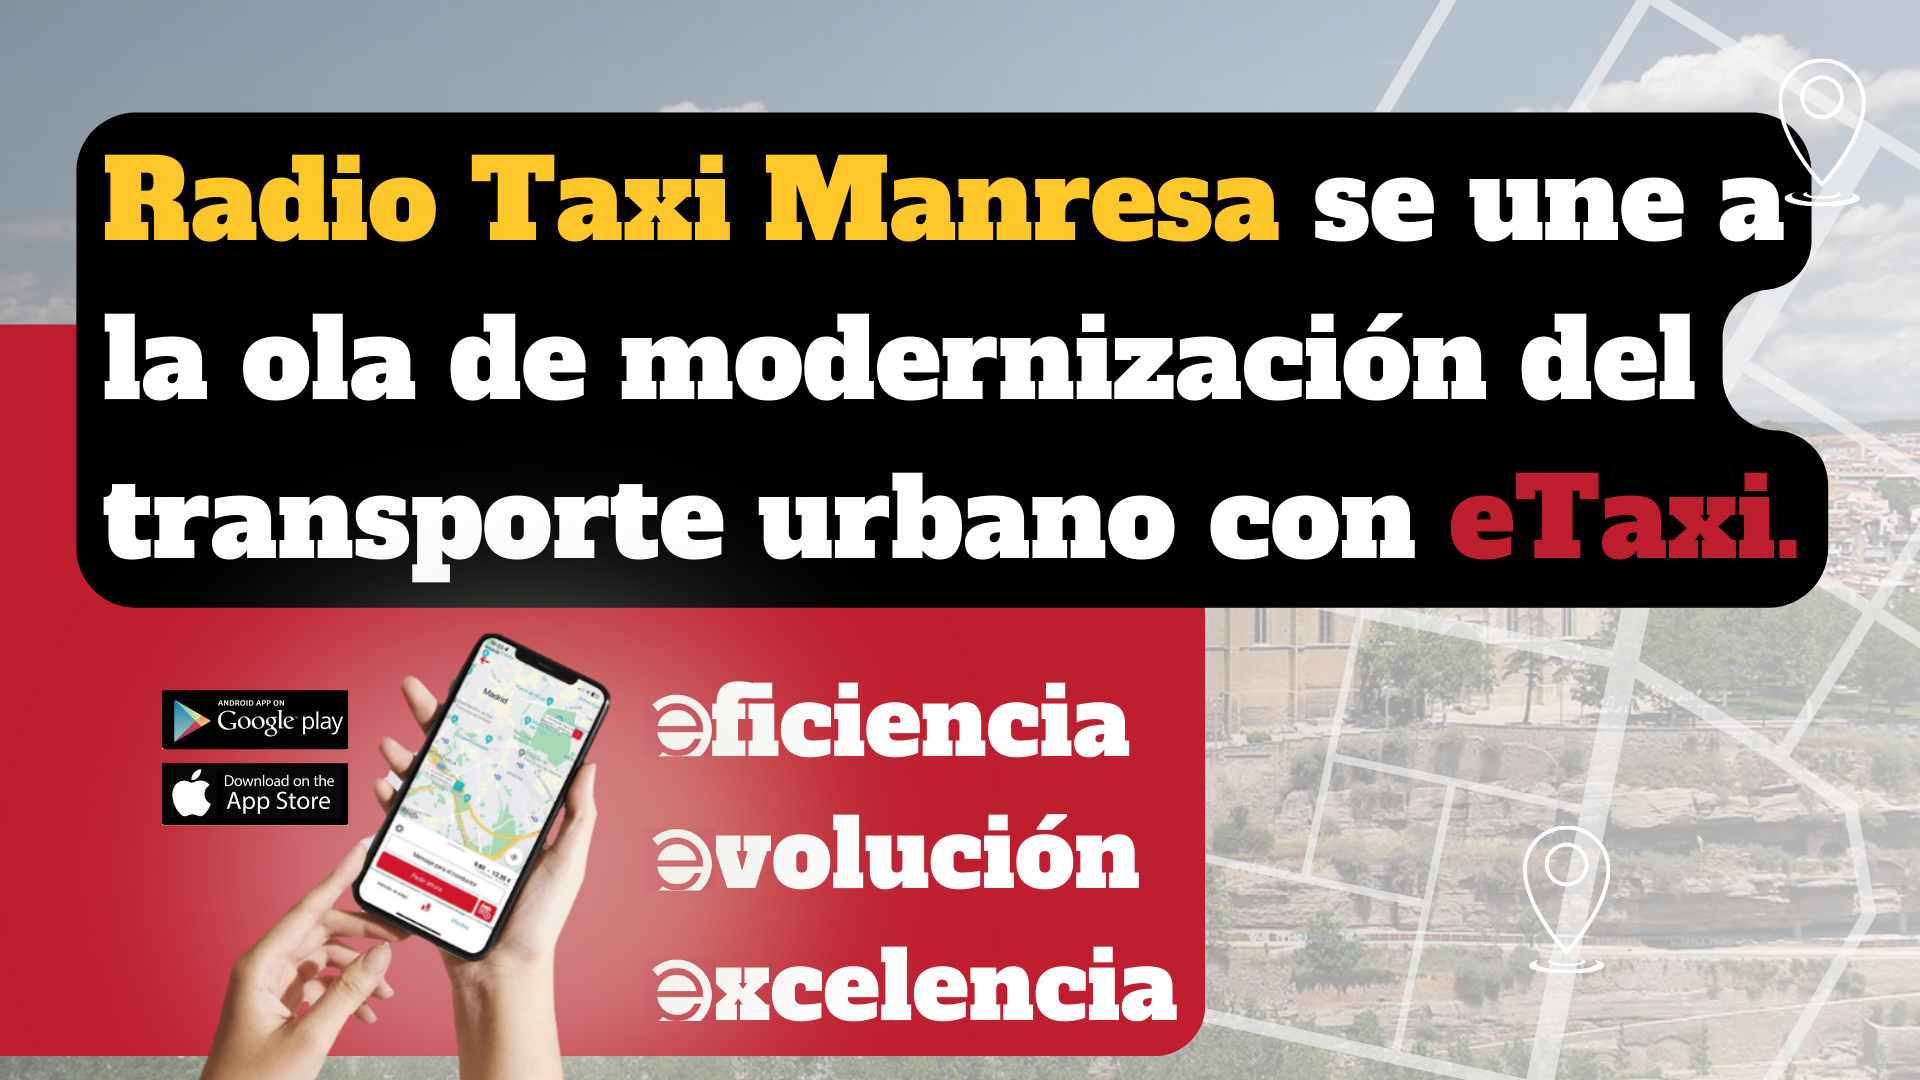 Radio Taxi Manresa se une a la ola de modernización del transporte urbano con su sistema de etaxi.